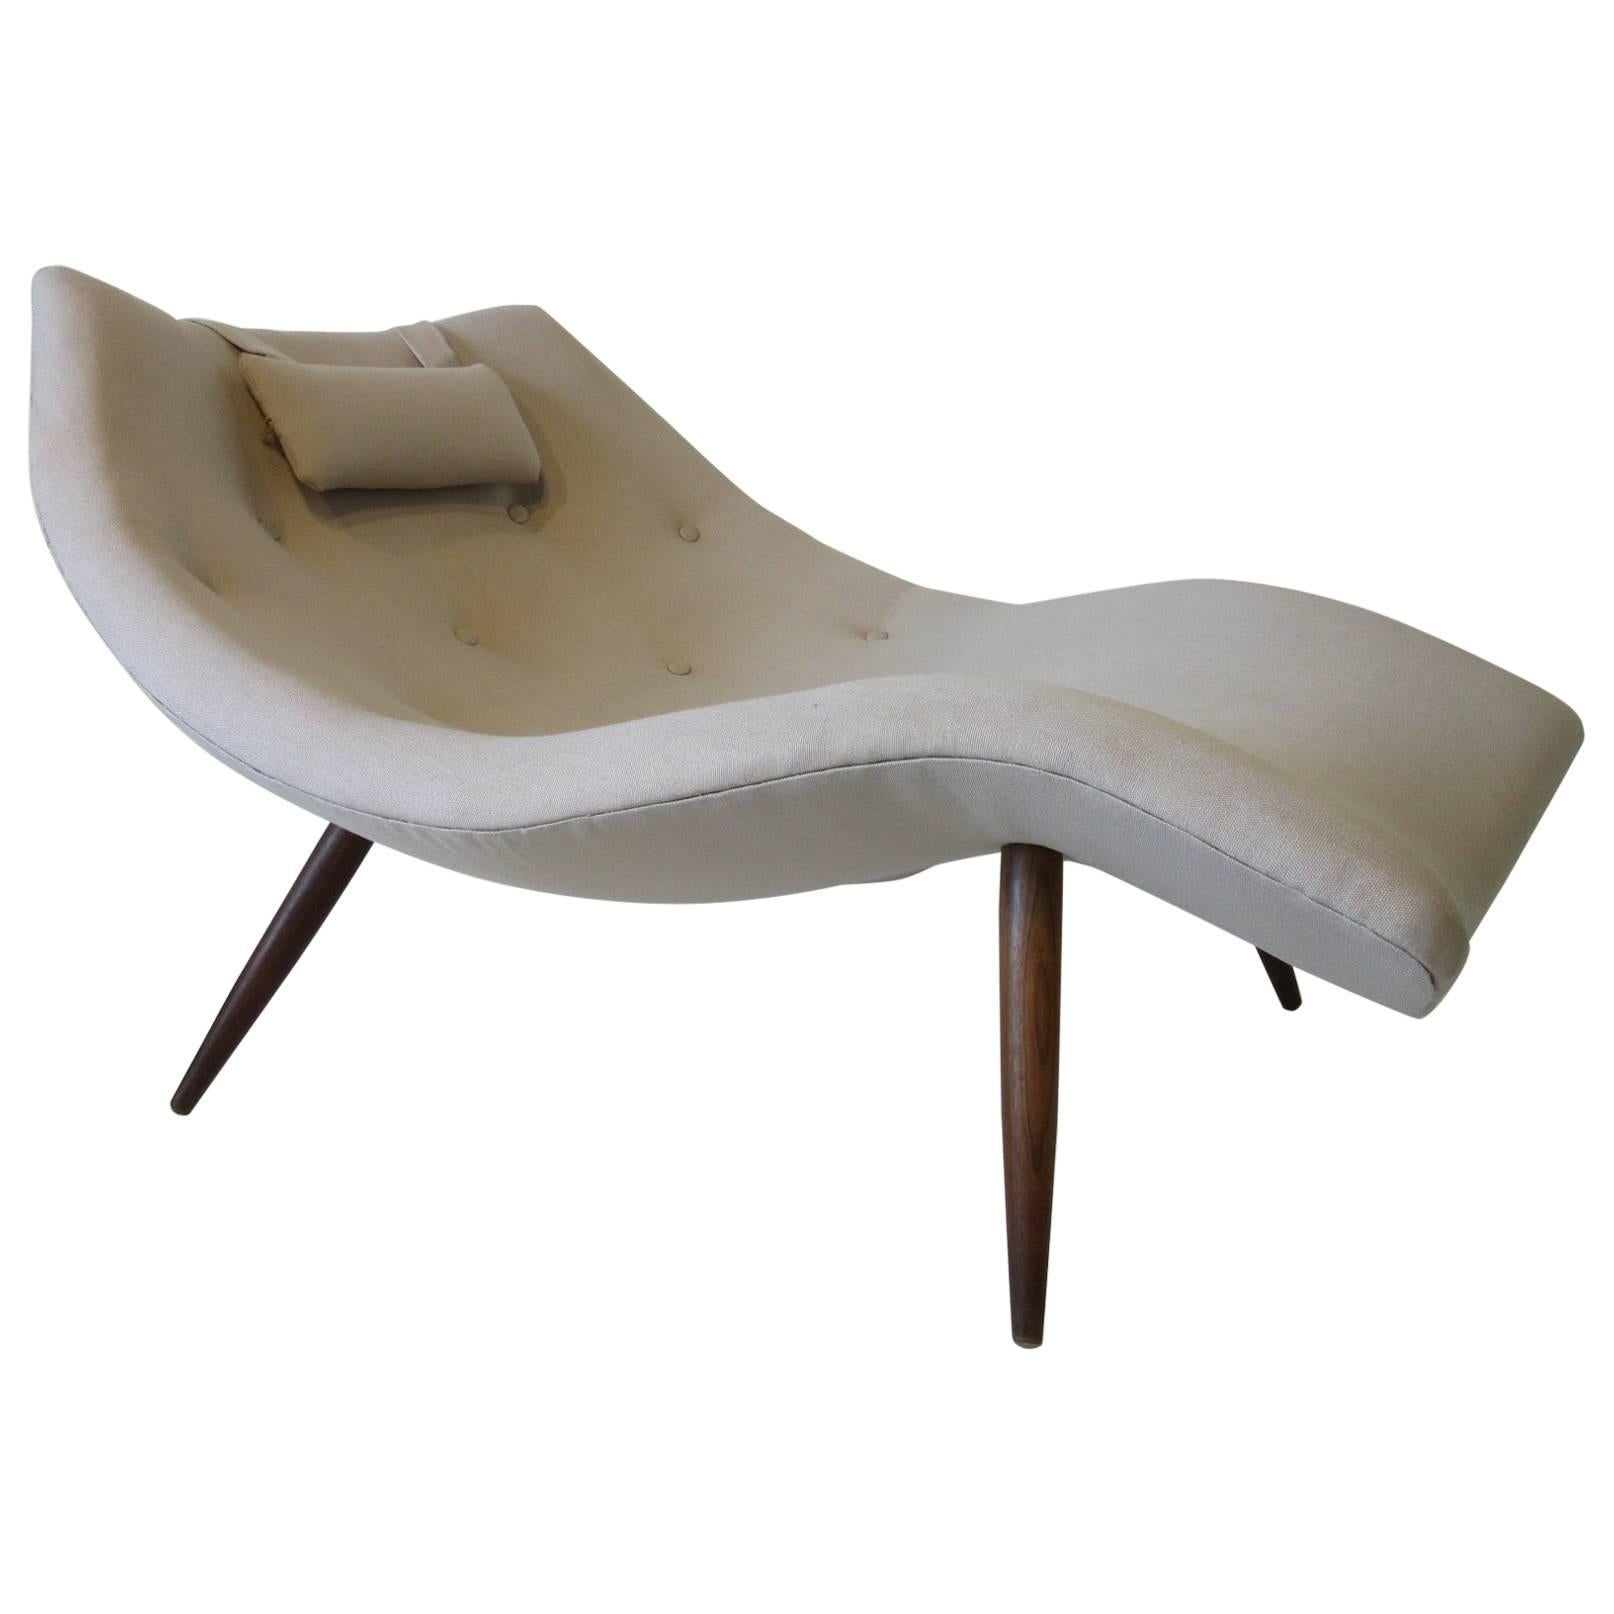 Rare Sculptural Adrian Pearsall Chaise Lounge Chair